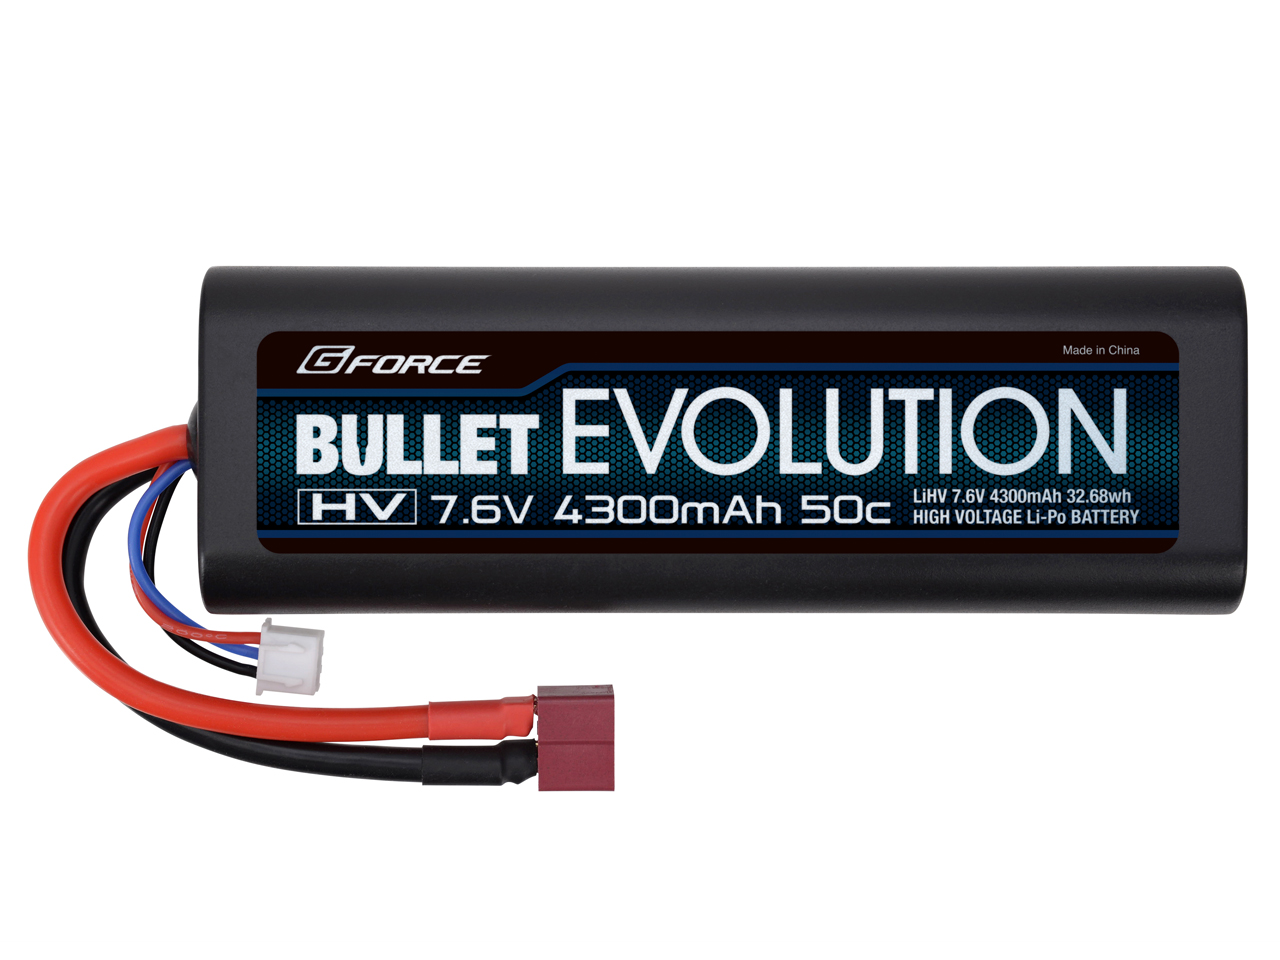 Bullet Evolution LiHV 7.6V 4300mAh | G-FORCE | 株式会社ジーフォース